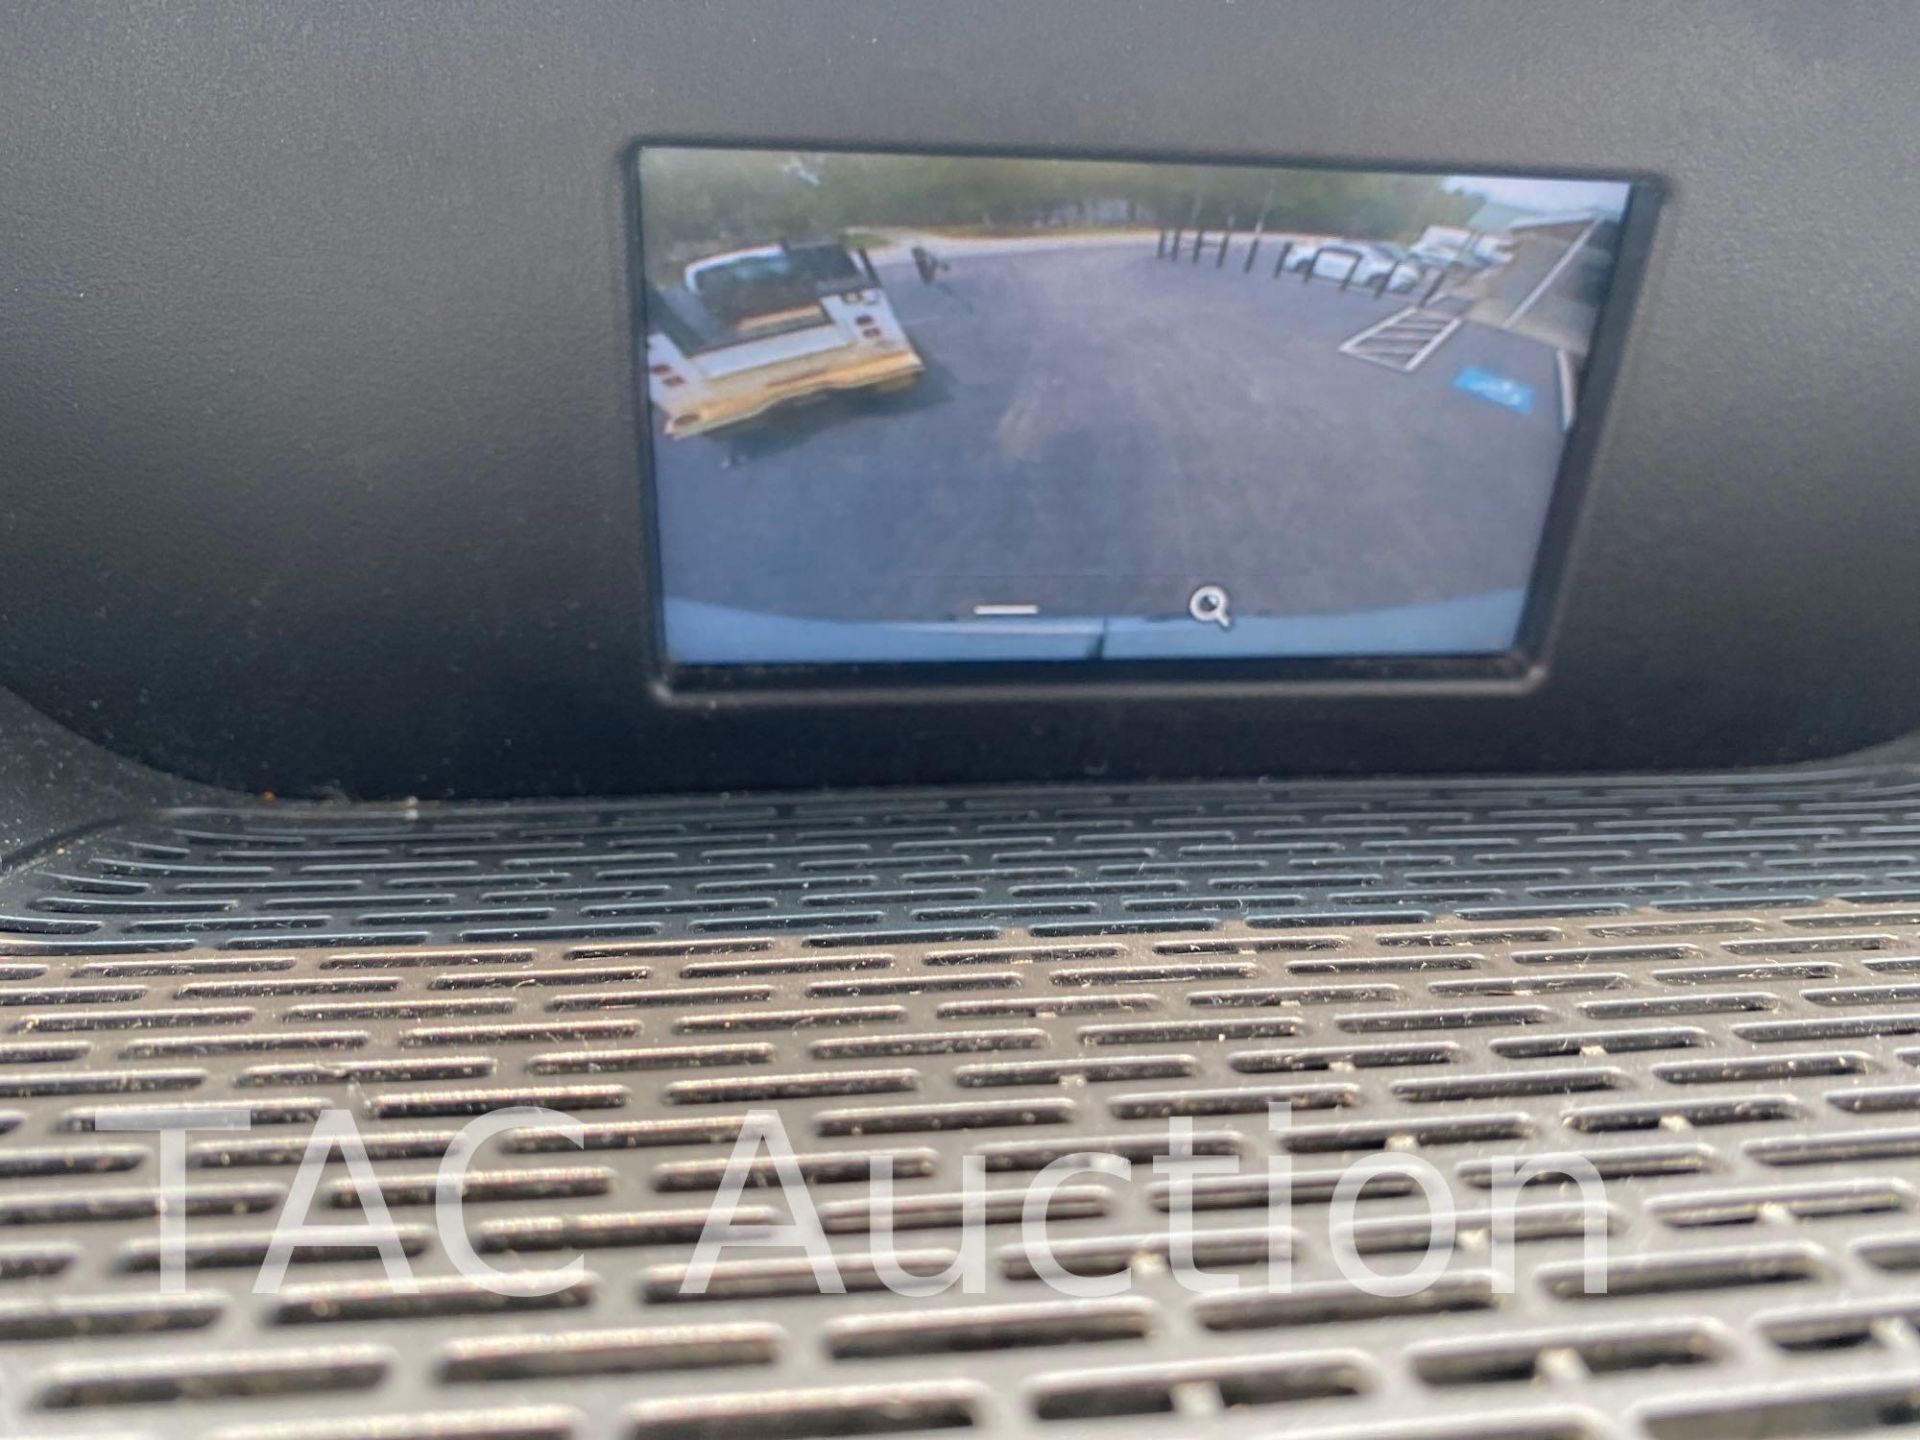 2018 Ford Transit 150 Cargo Van - Image 16 of 46